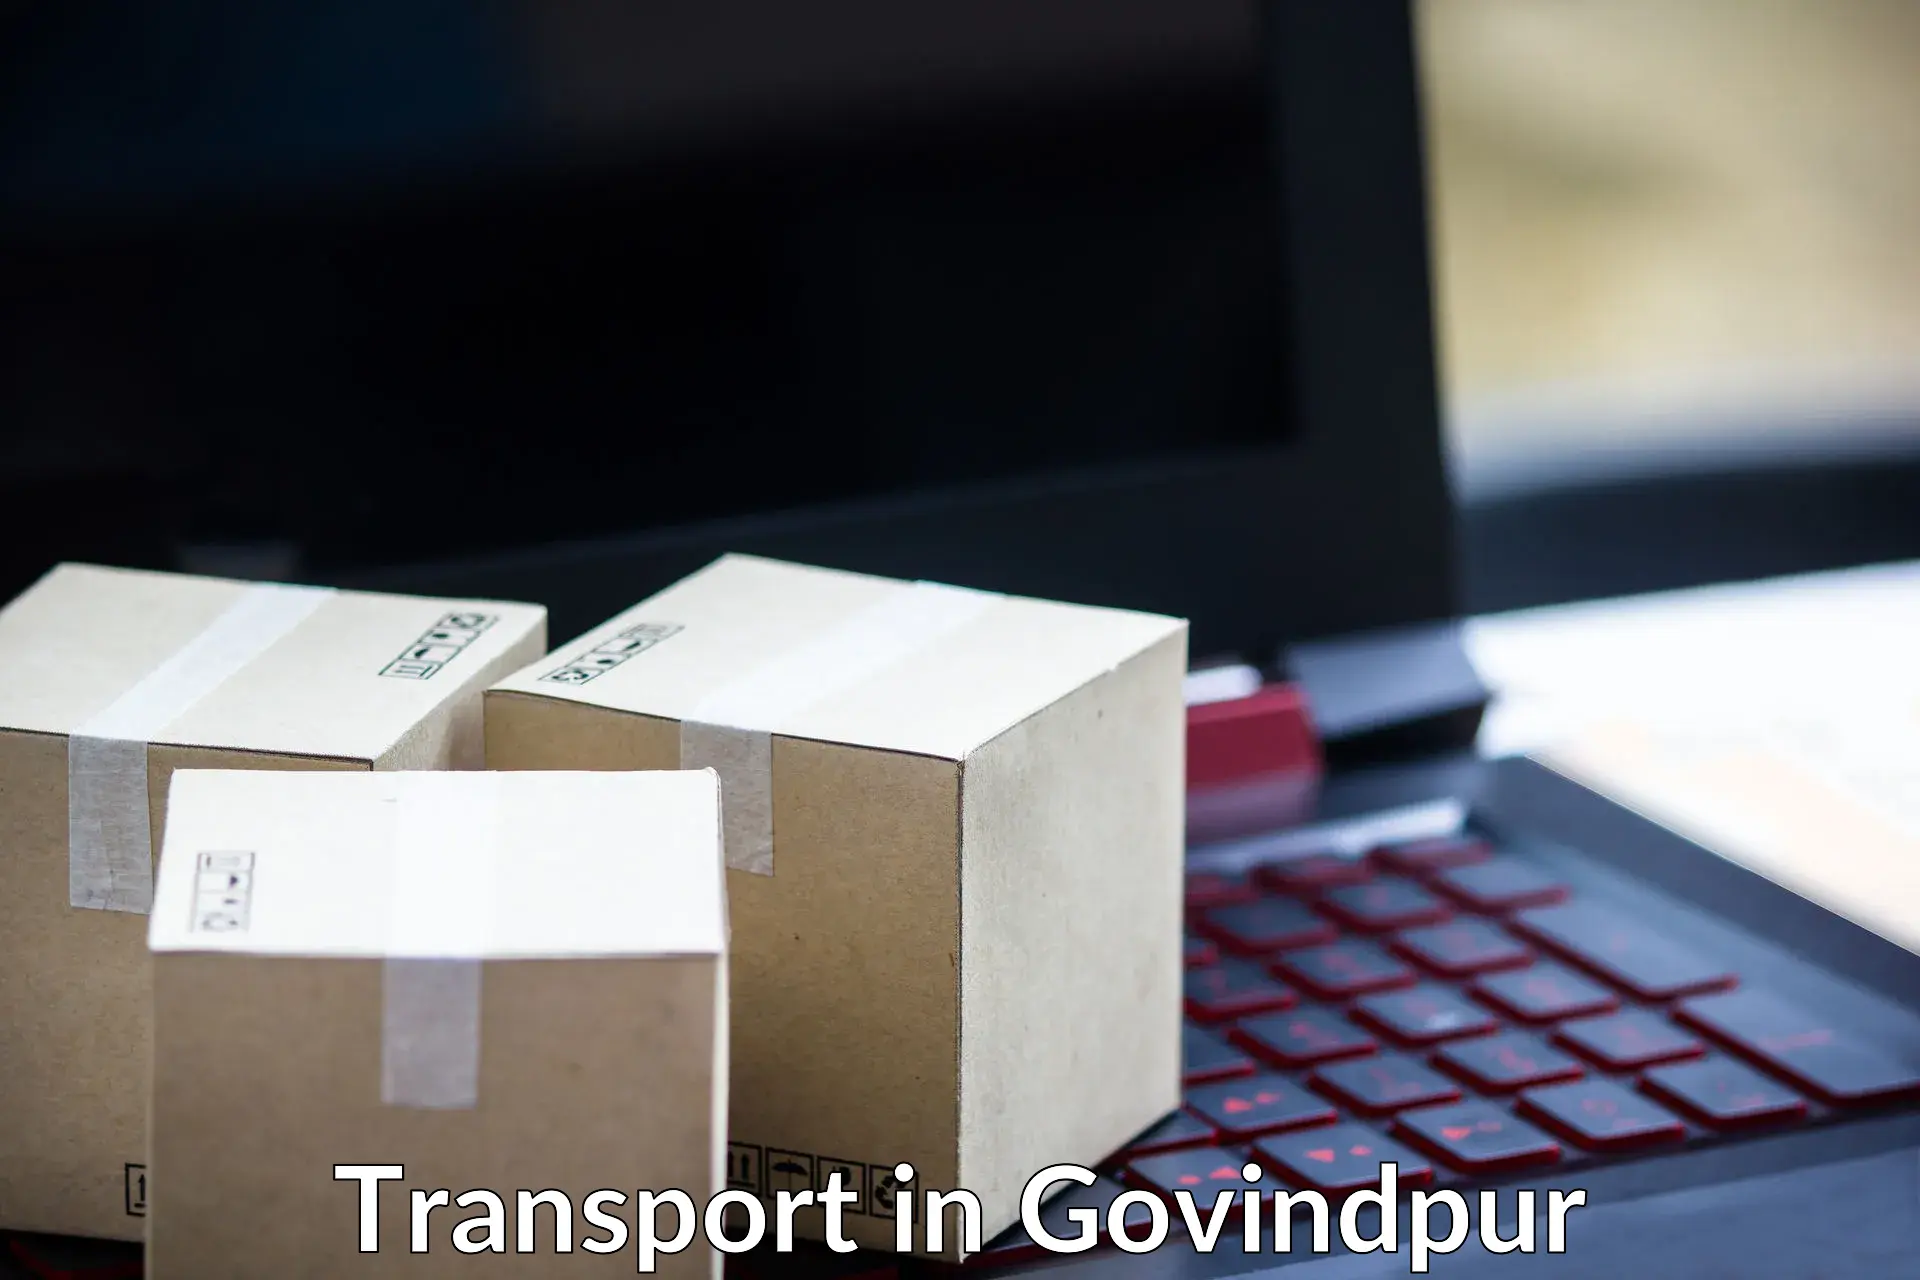 Road transport online services in Govindpur